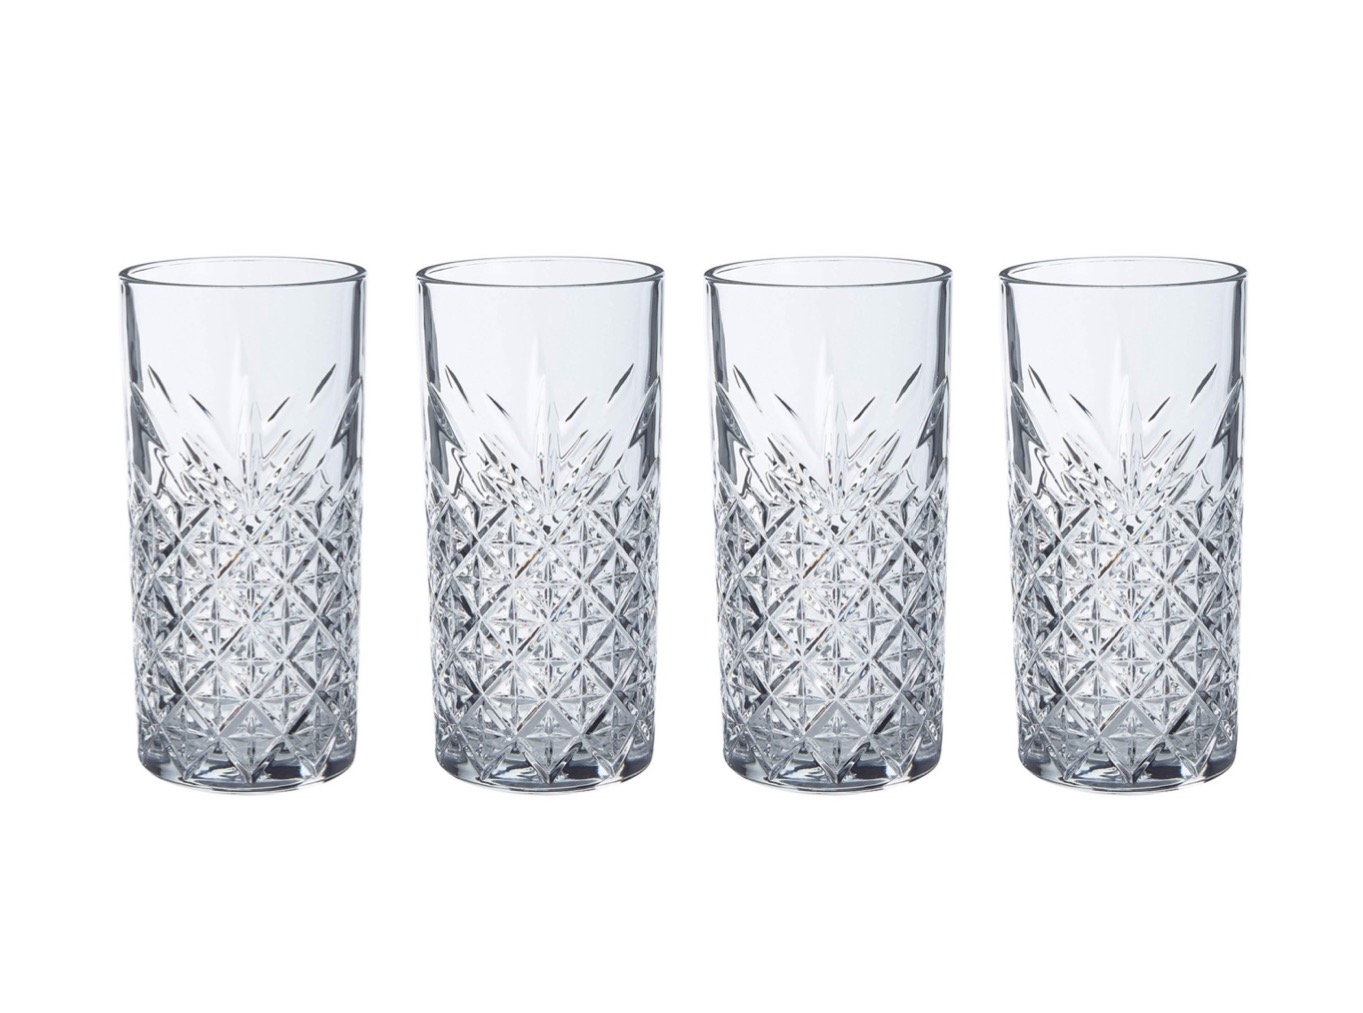 6 er Set Longdrink Glas „Timeless“ im Kristall-Design Pasabahce 52820  Gläser 